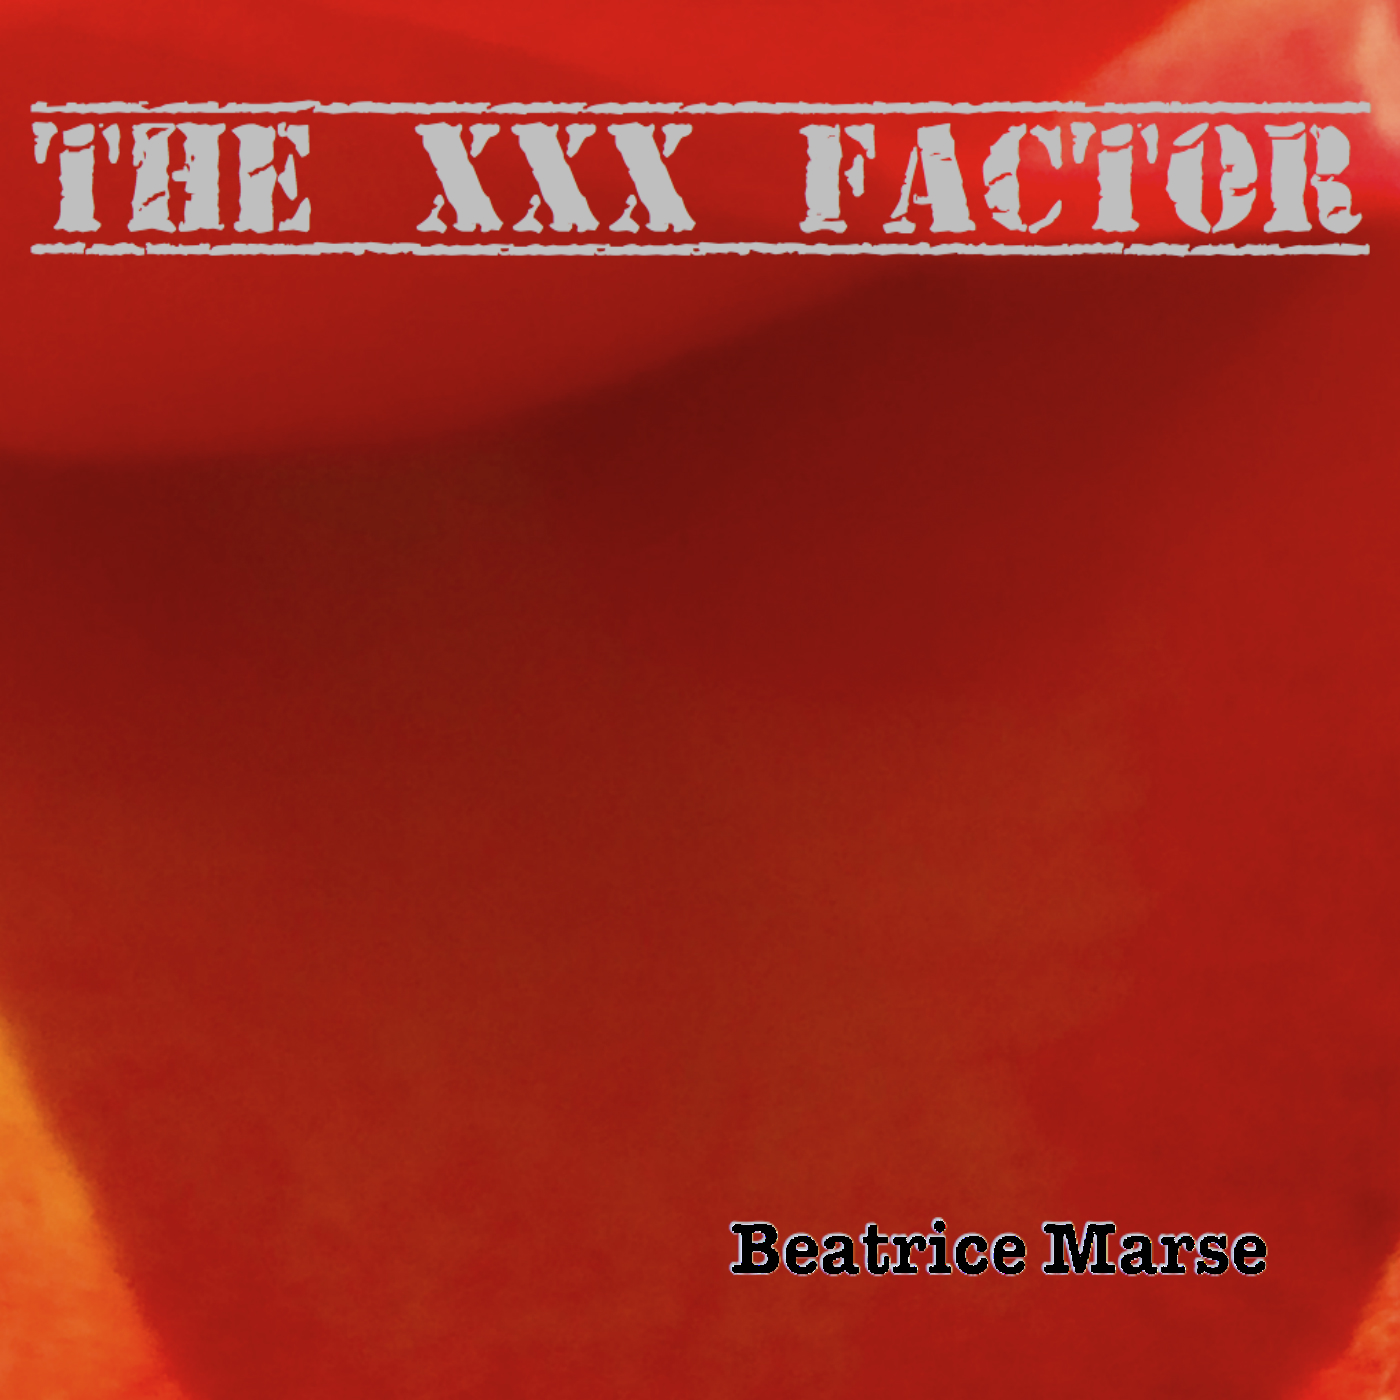 The XXX Factor album cover 0918 pxlr